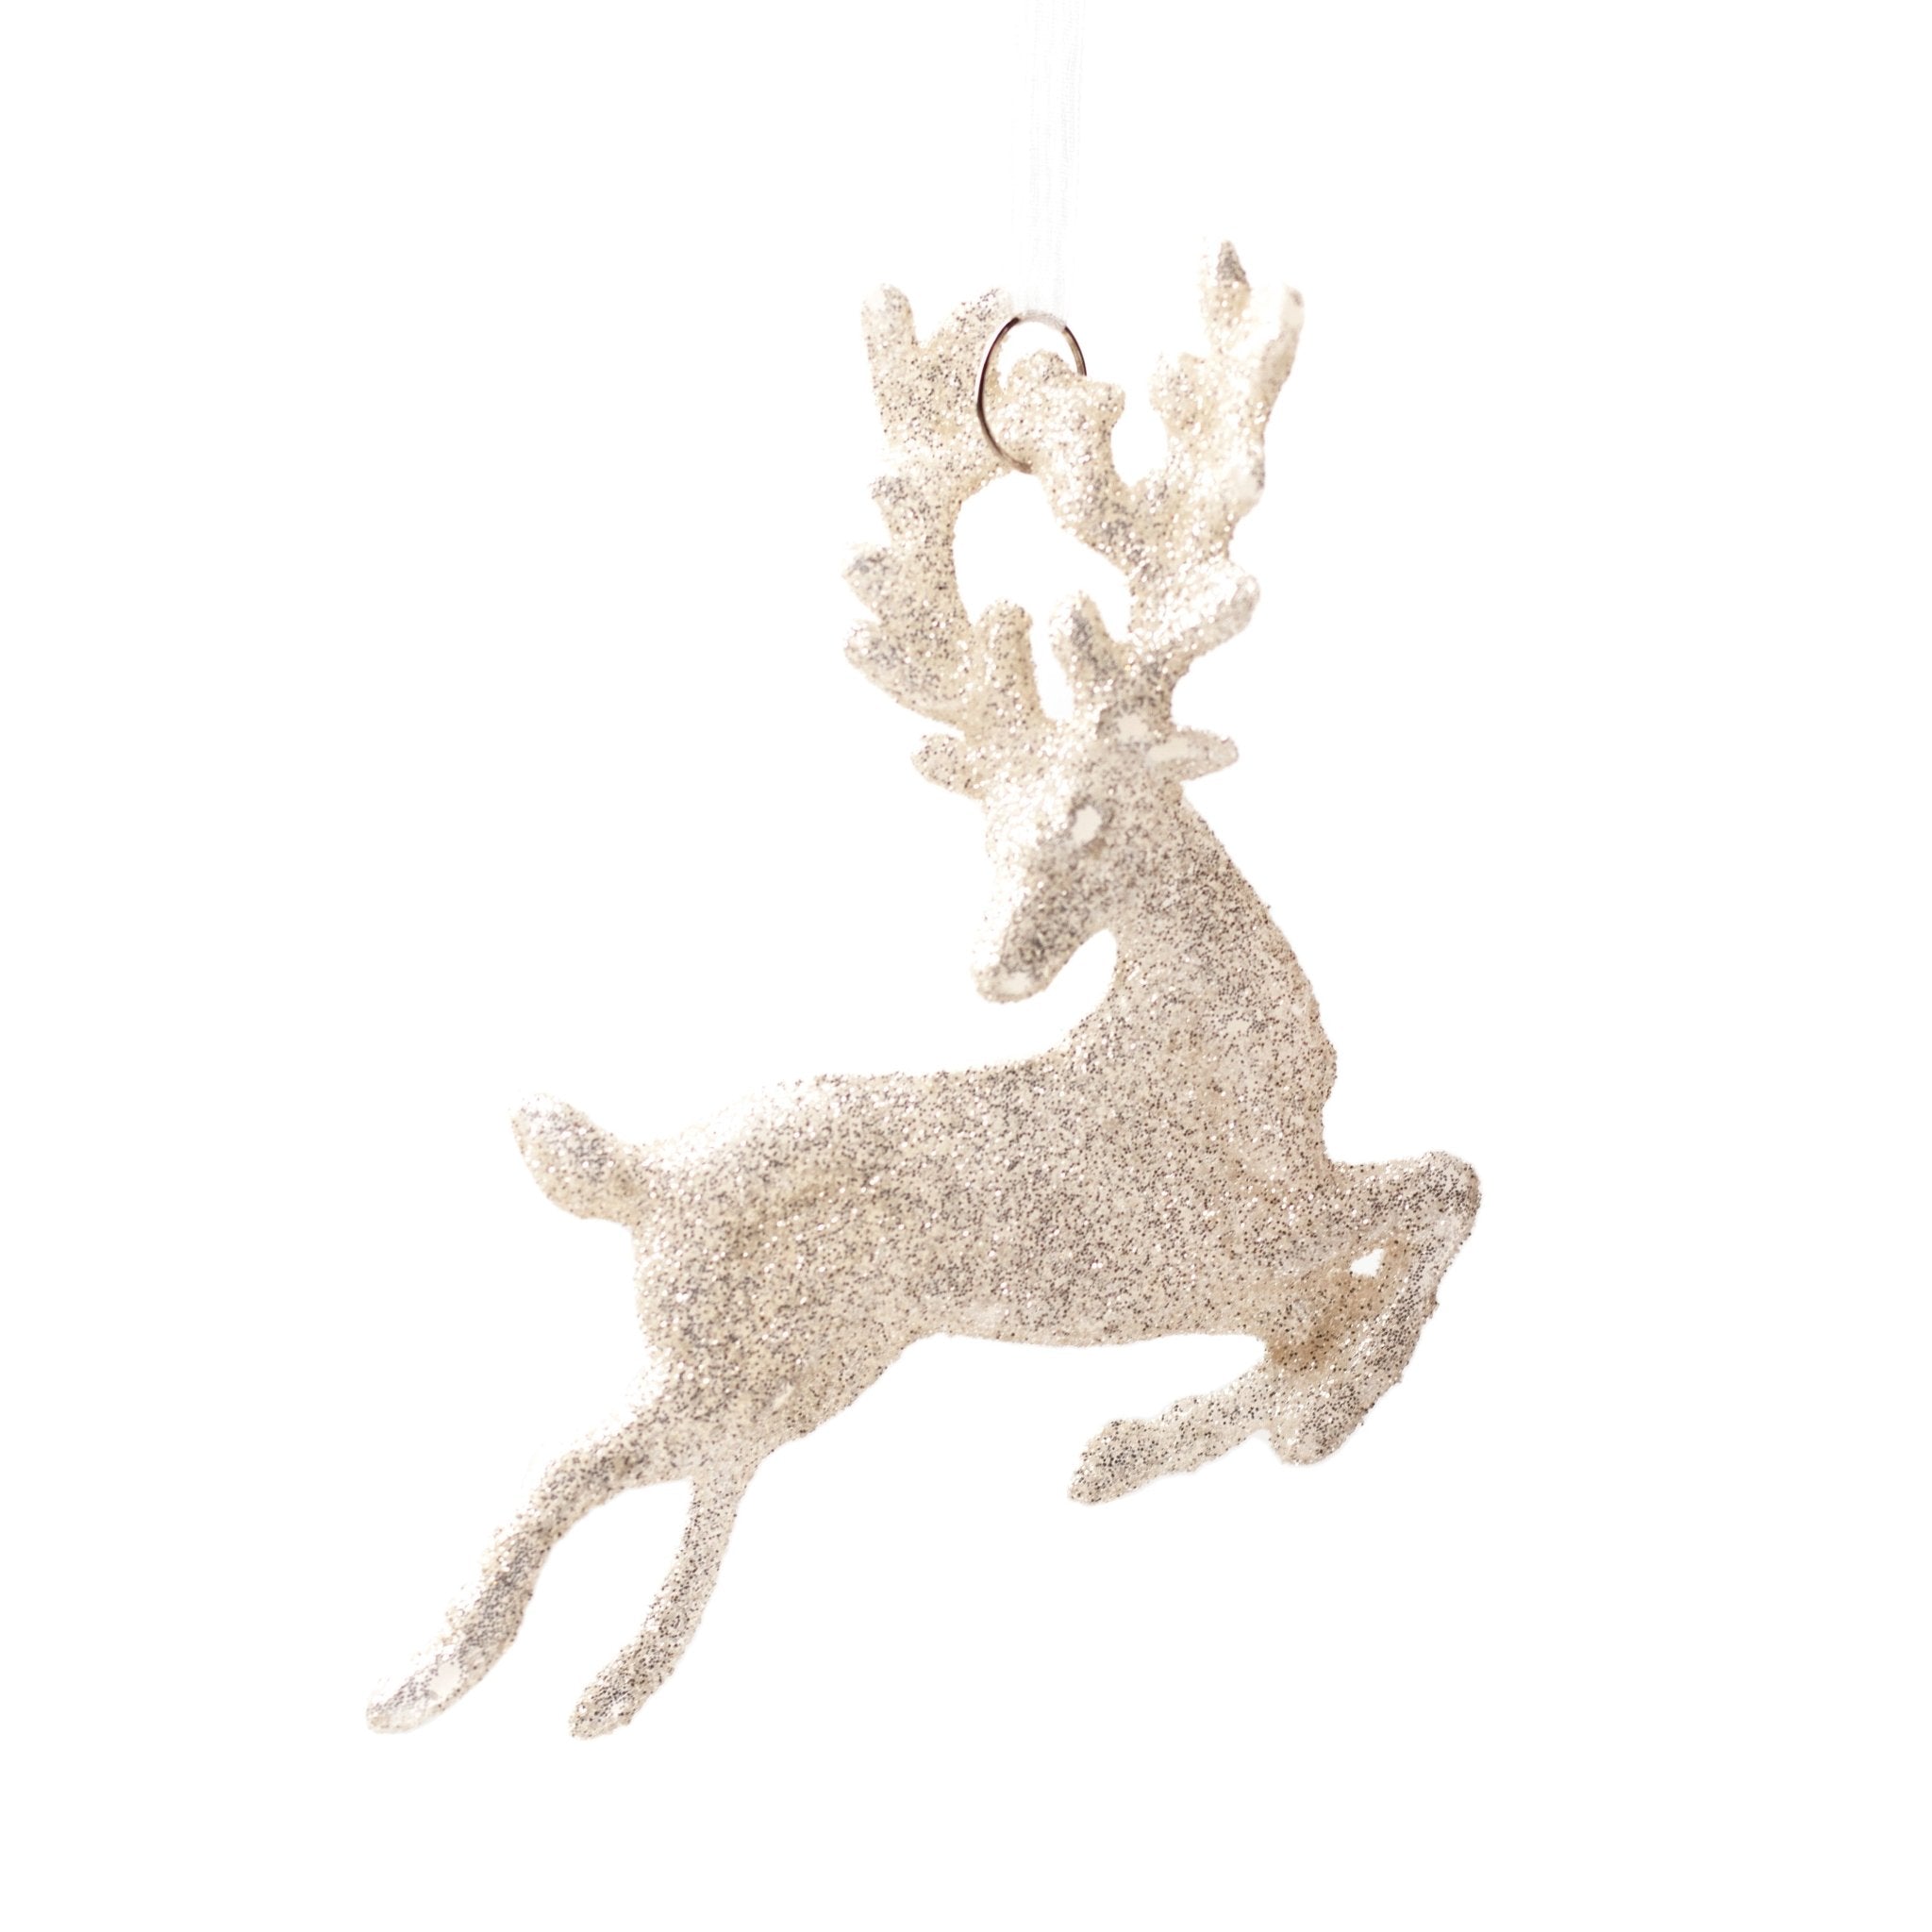 12cm Flying Reindeer Glittered Shatterproof Ornaments 00901 - MODA FLORA Santa's Workshop